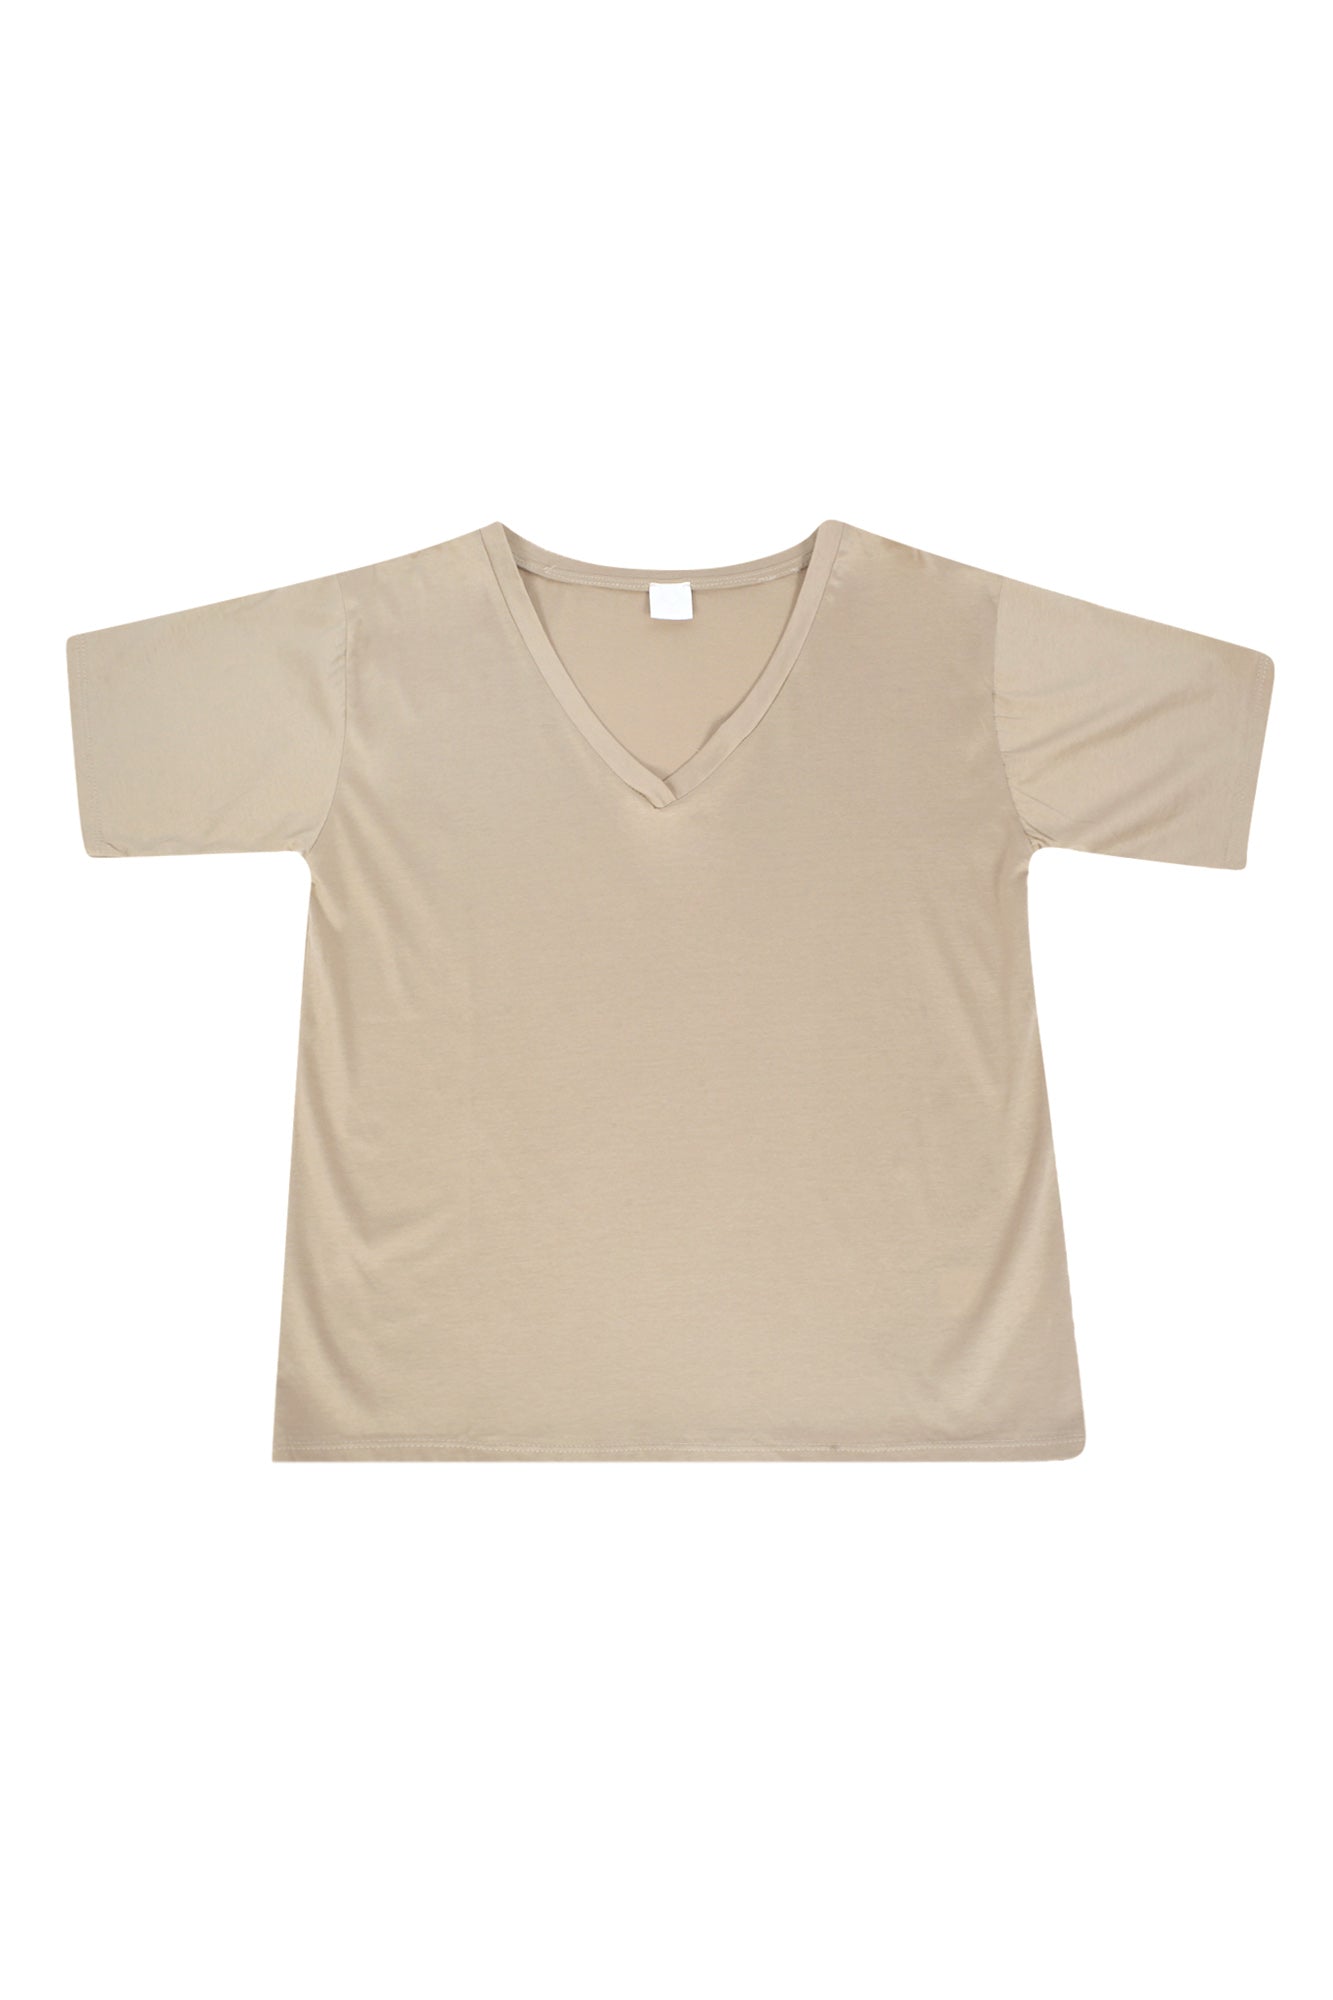 La Femme Blanche - T-shirt - 431581 - Biscotto